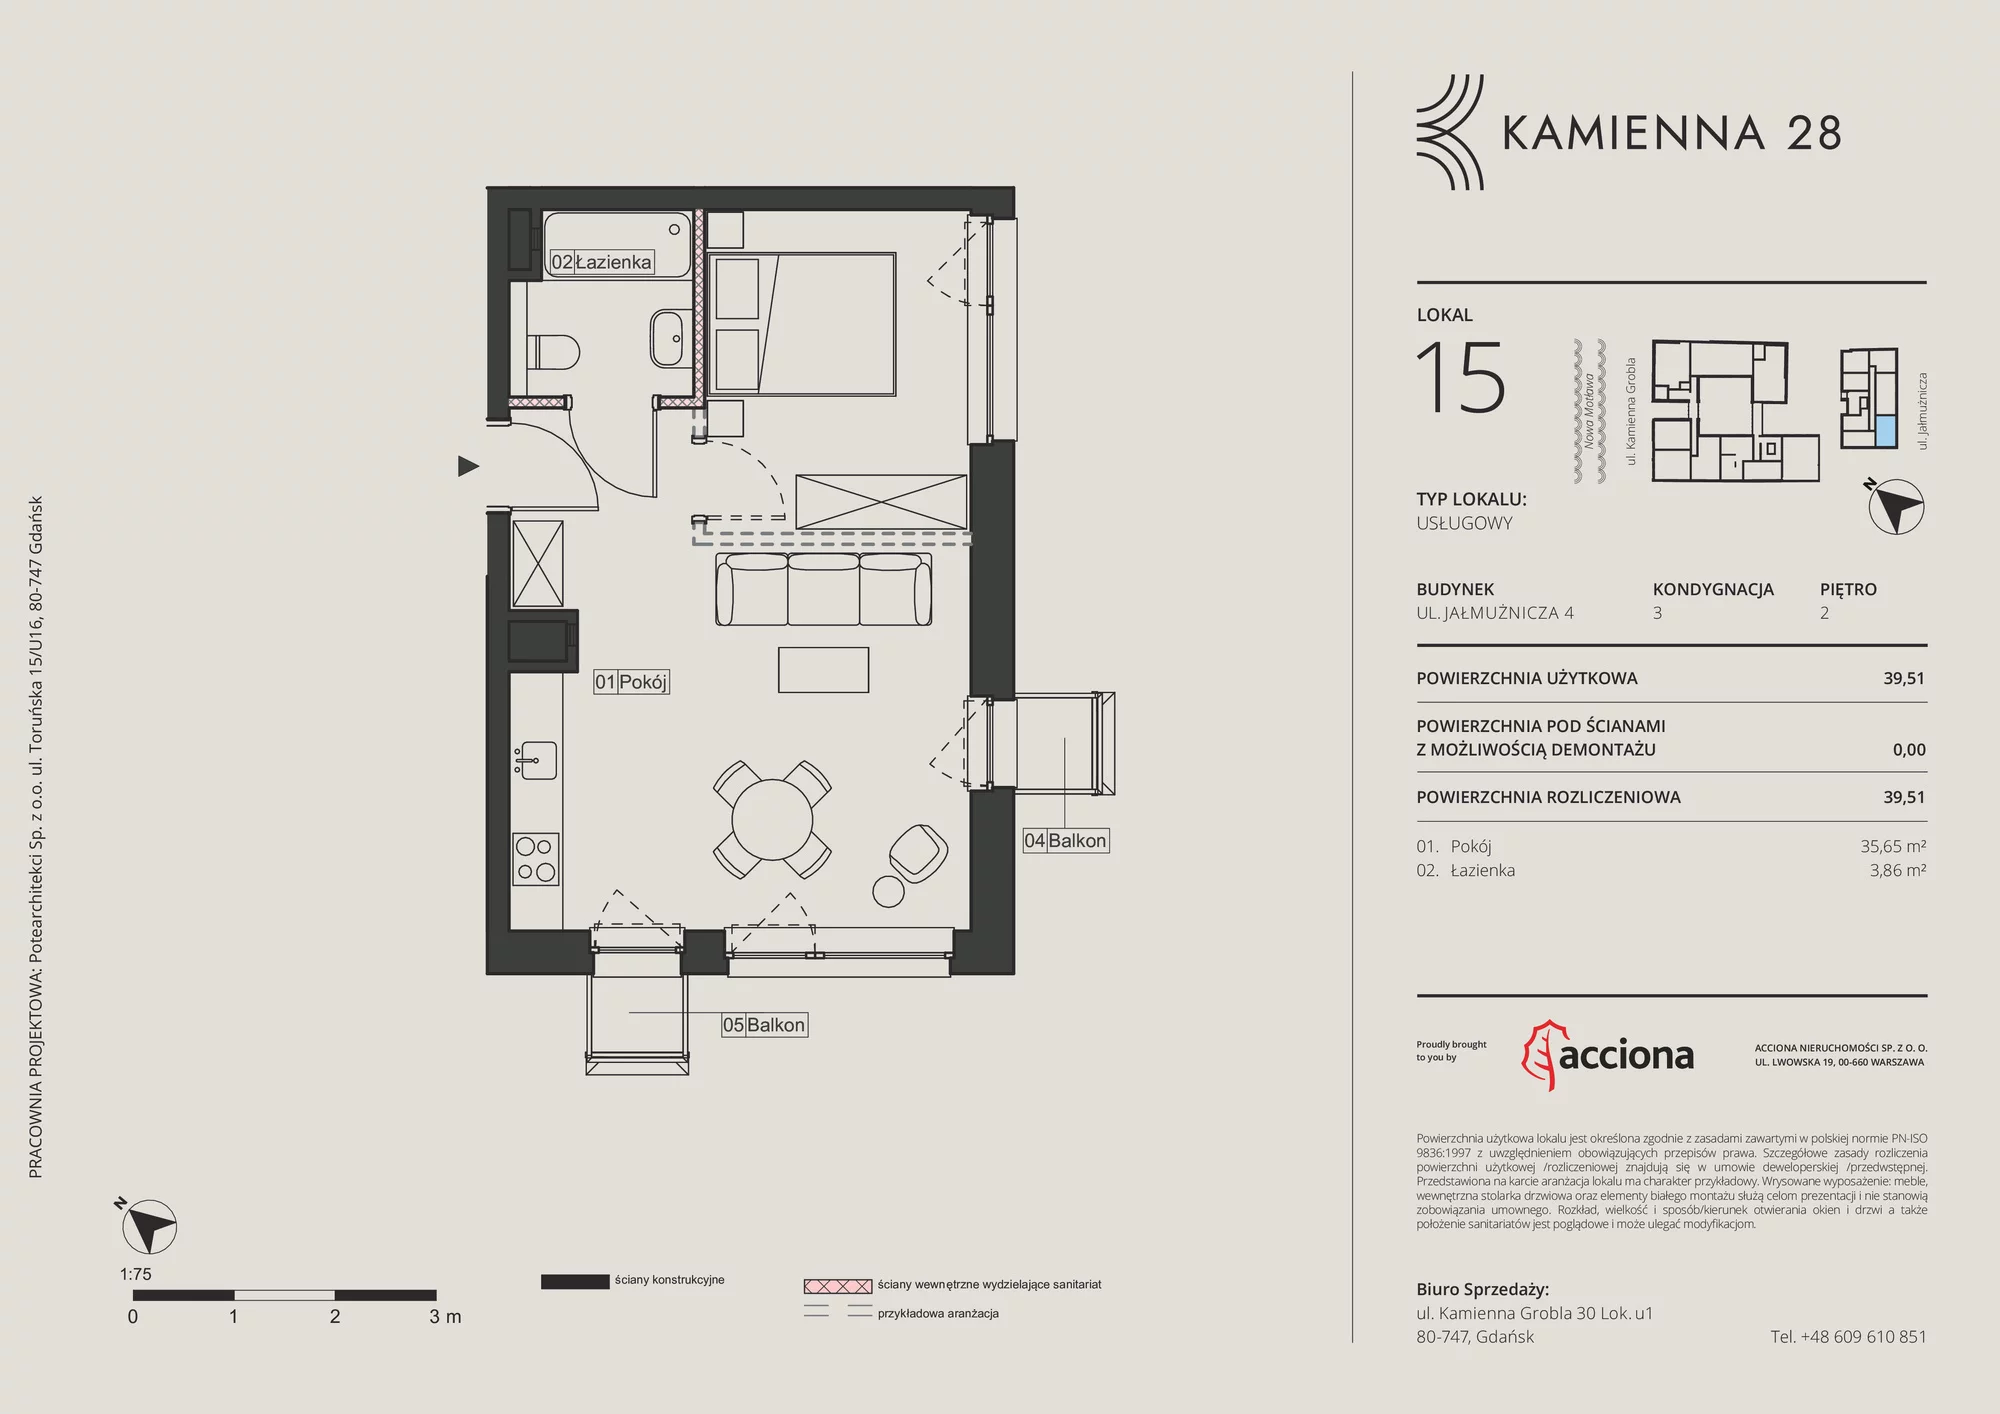 Apartament inwestycyjny 39,51 m², piętro 2, oferta nr 4.15, Kamienna 28 - apartamenty inwestycyjne, Gdańsk, Śródmieście, Dolne Miasto, ul. Jałmużnicza 4